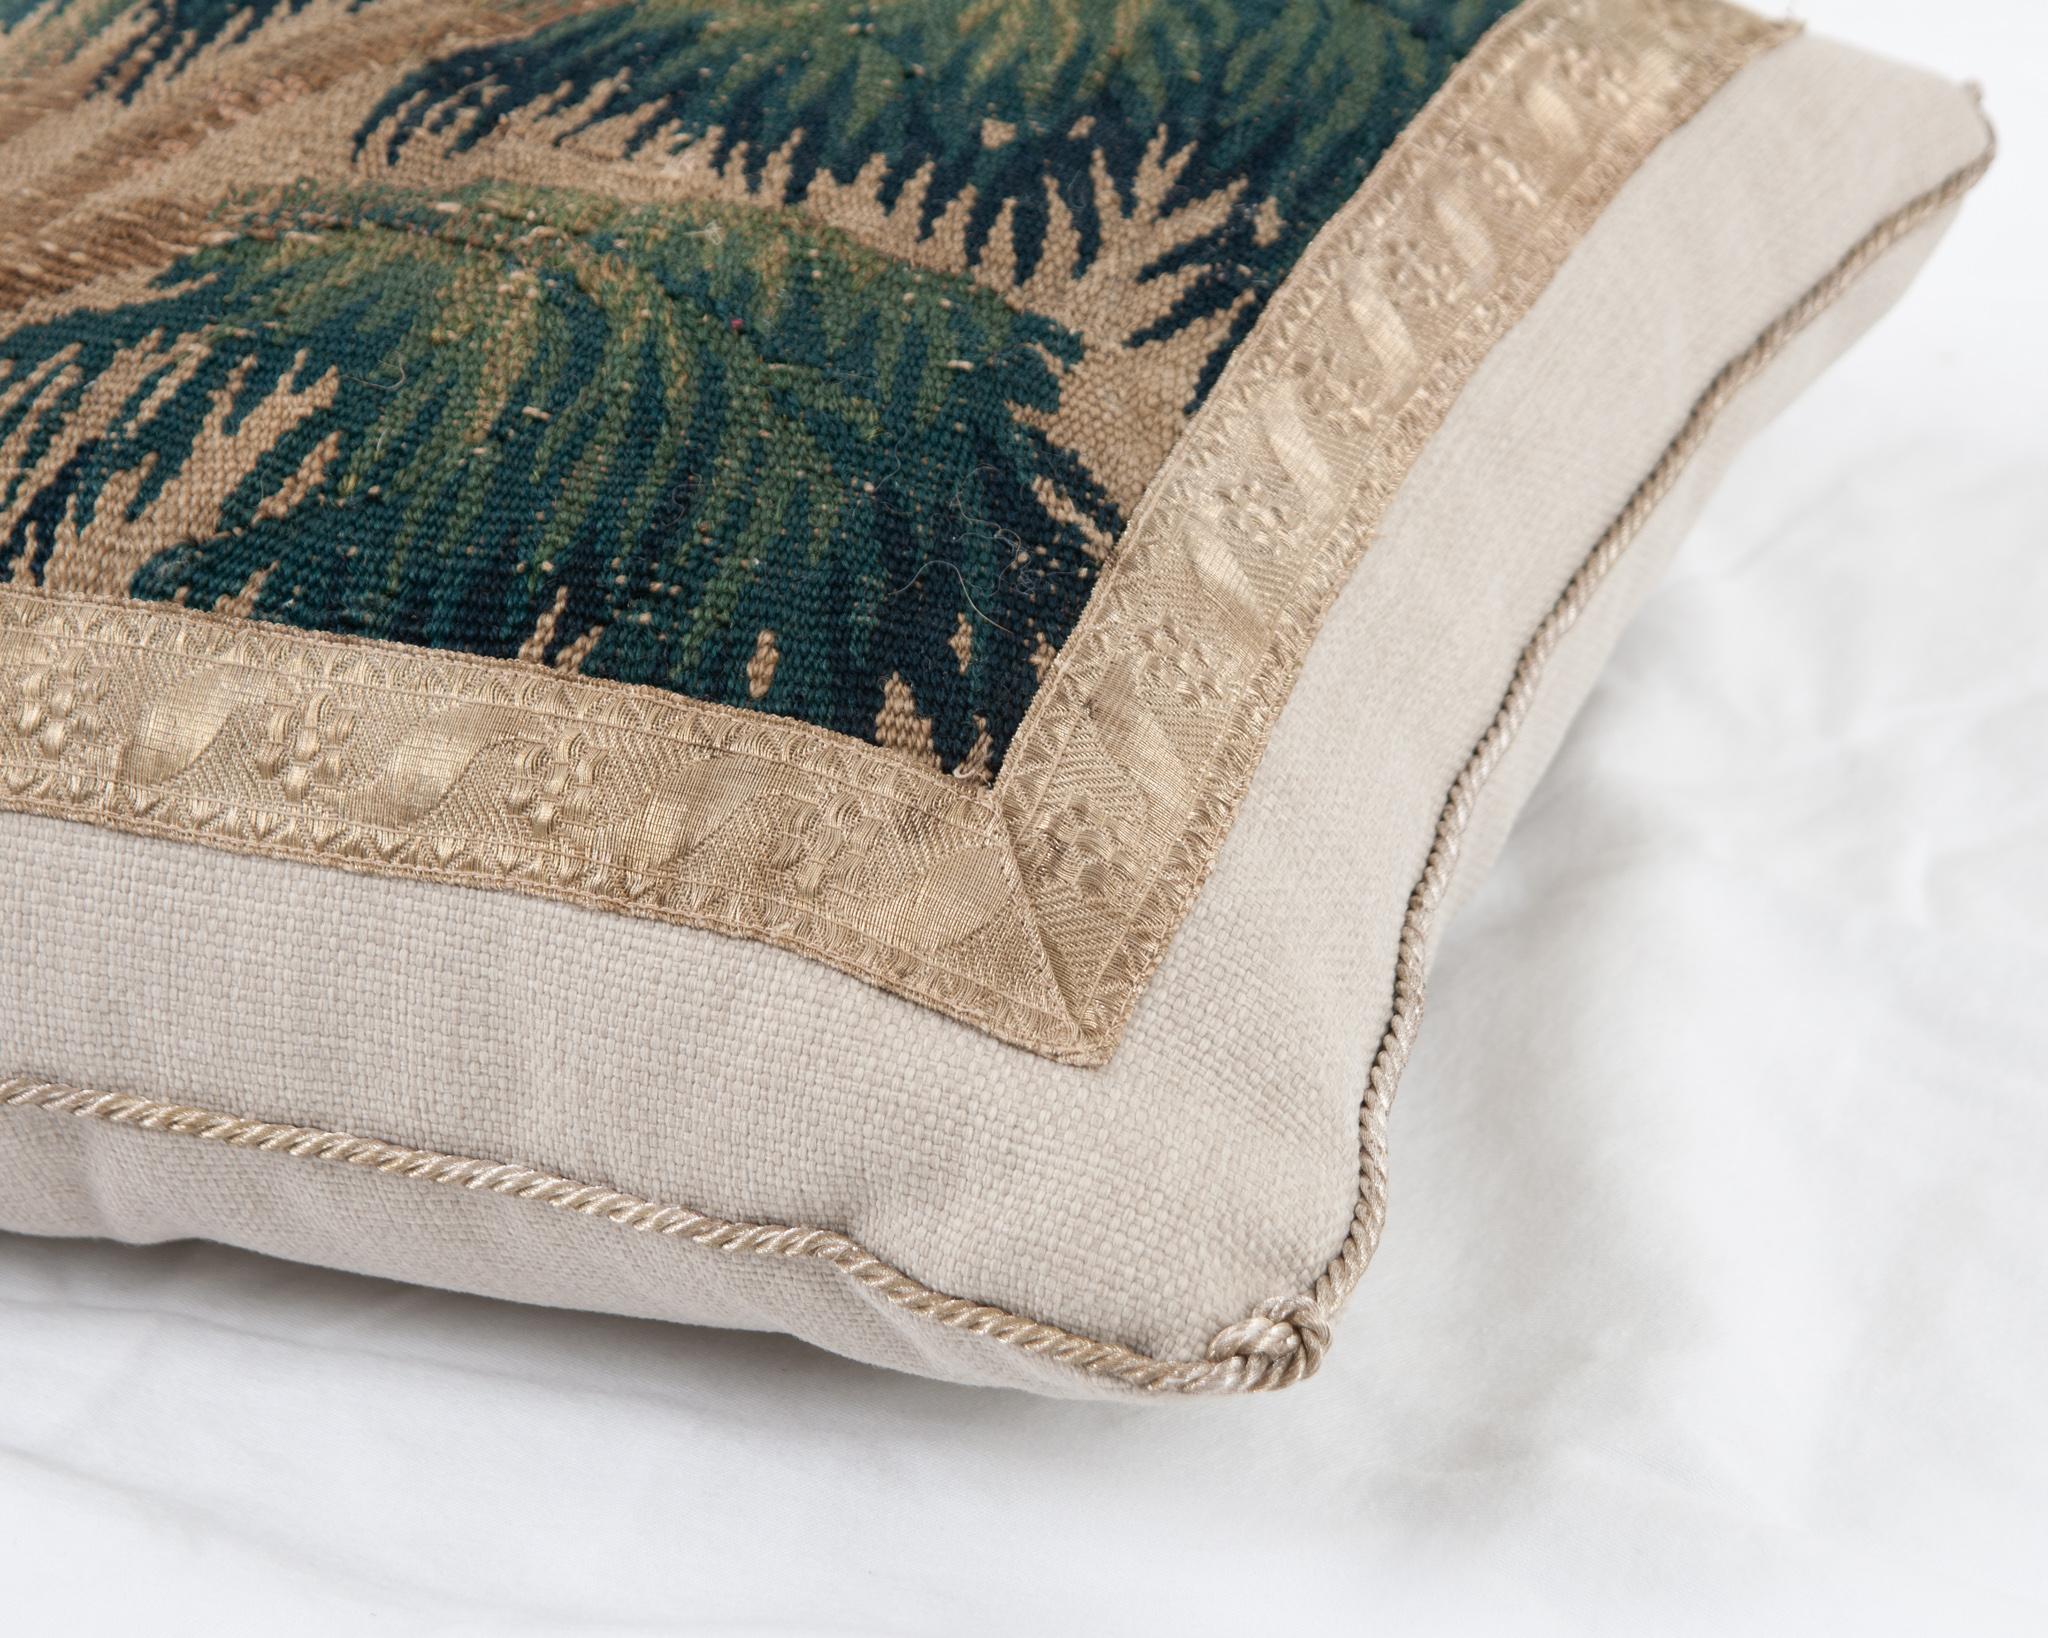 Woven B. Viz Design Antique Textile Pillow For Sale